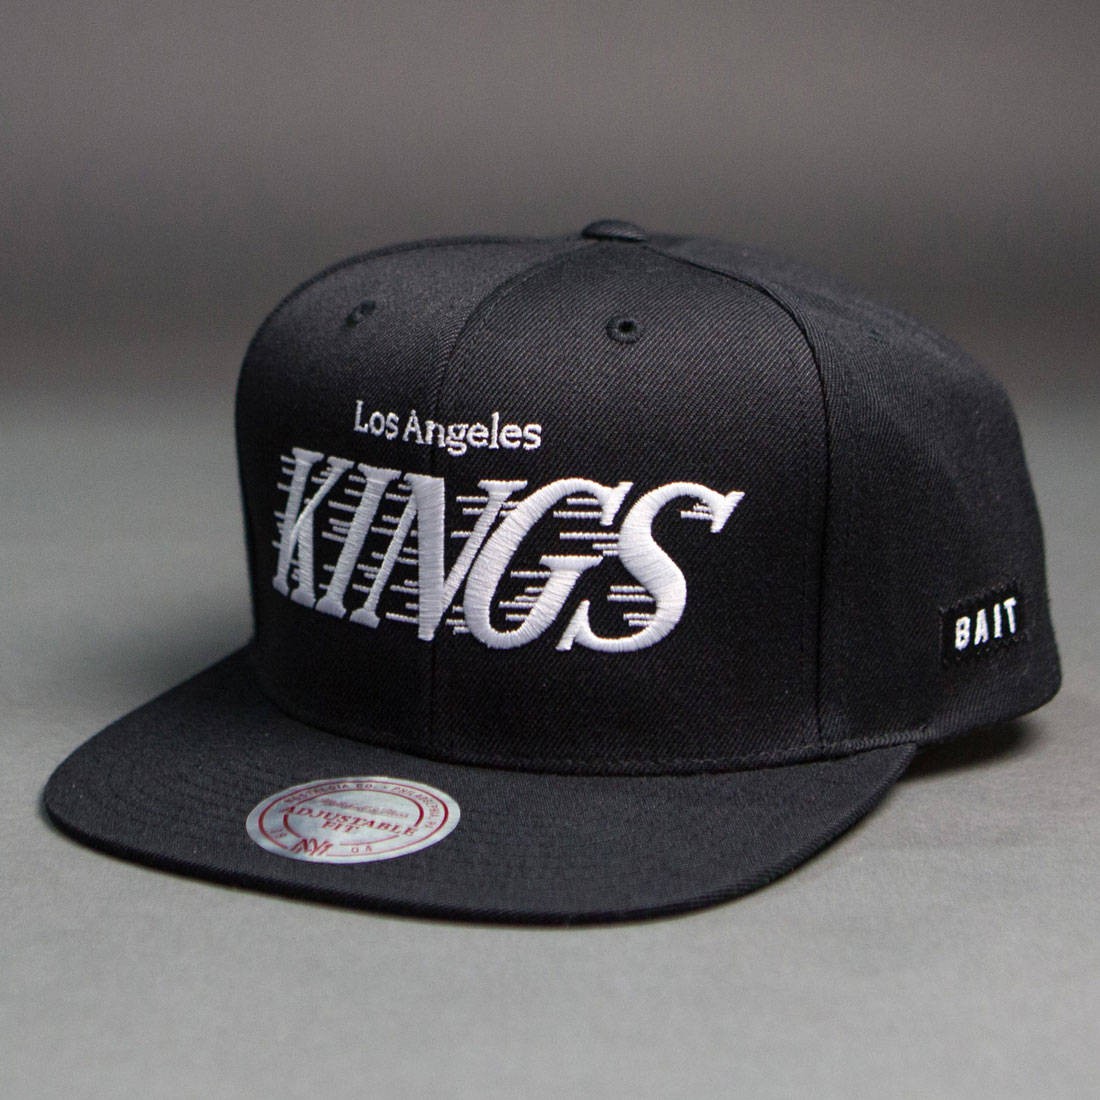 nhl kings hat